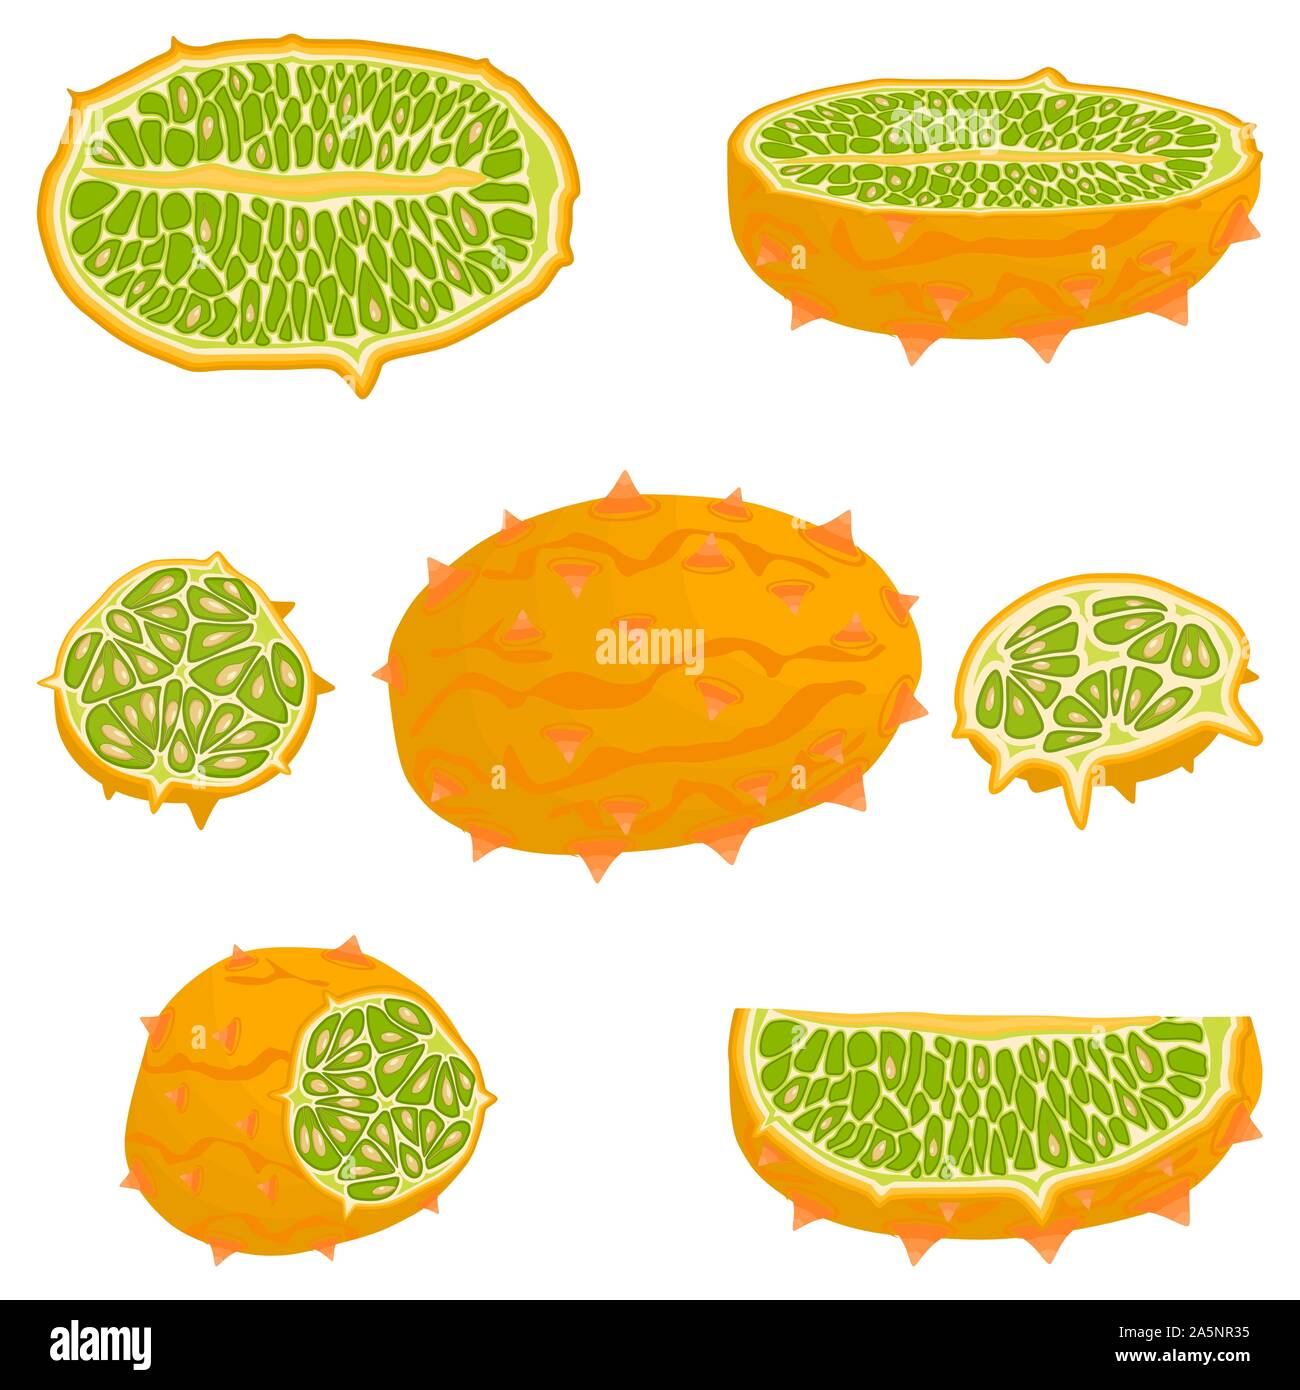 Abbildung auf Thema große verschiedene afrikanische kiwano, grüne Stengel, Melone verschiedener Größe. Kiwano Muster bestehend aus Sammlung Mahlzeit Melone für o Stock Vektor